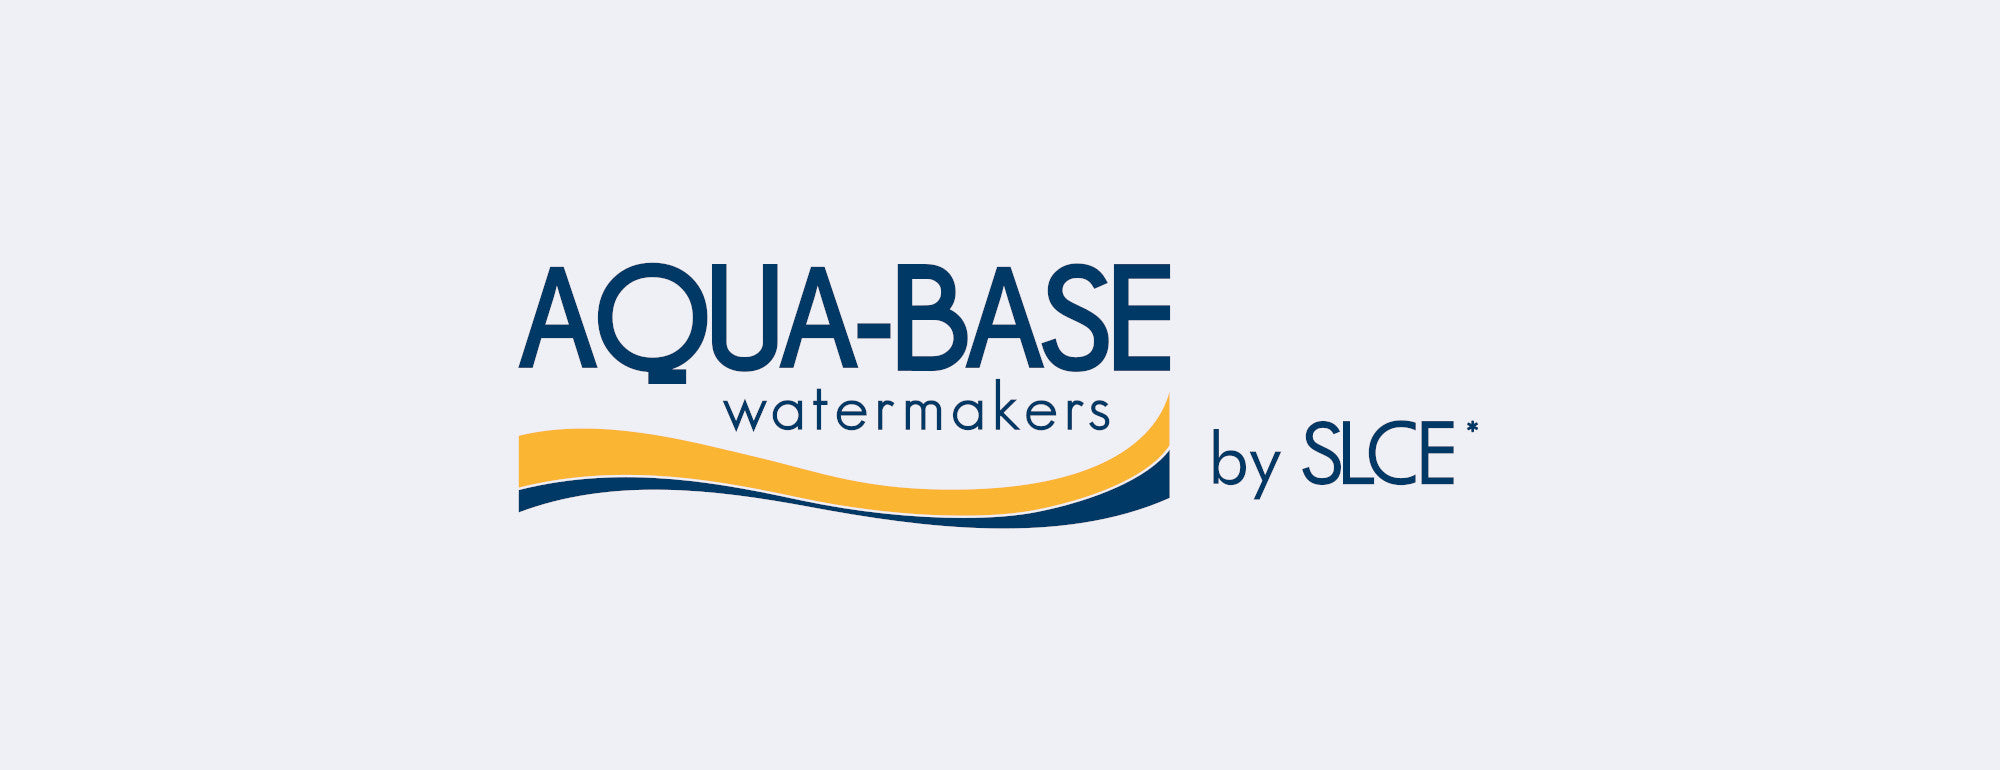 aqua-base slce logo